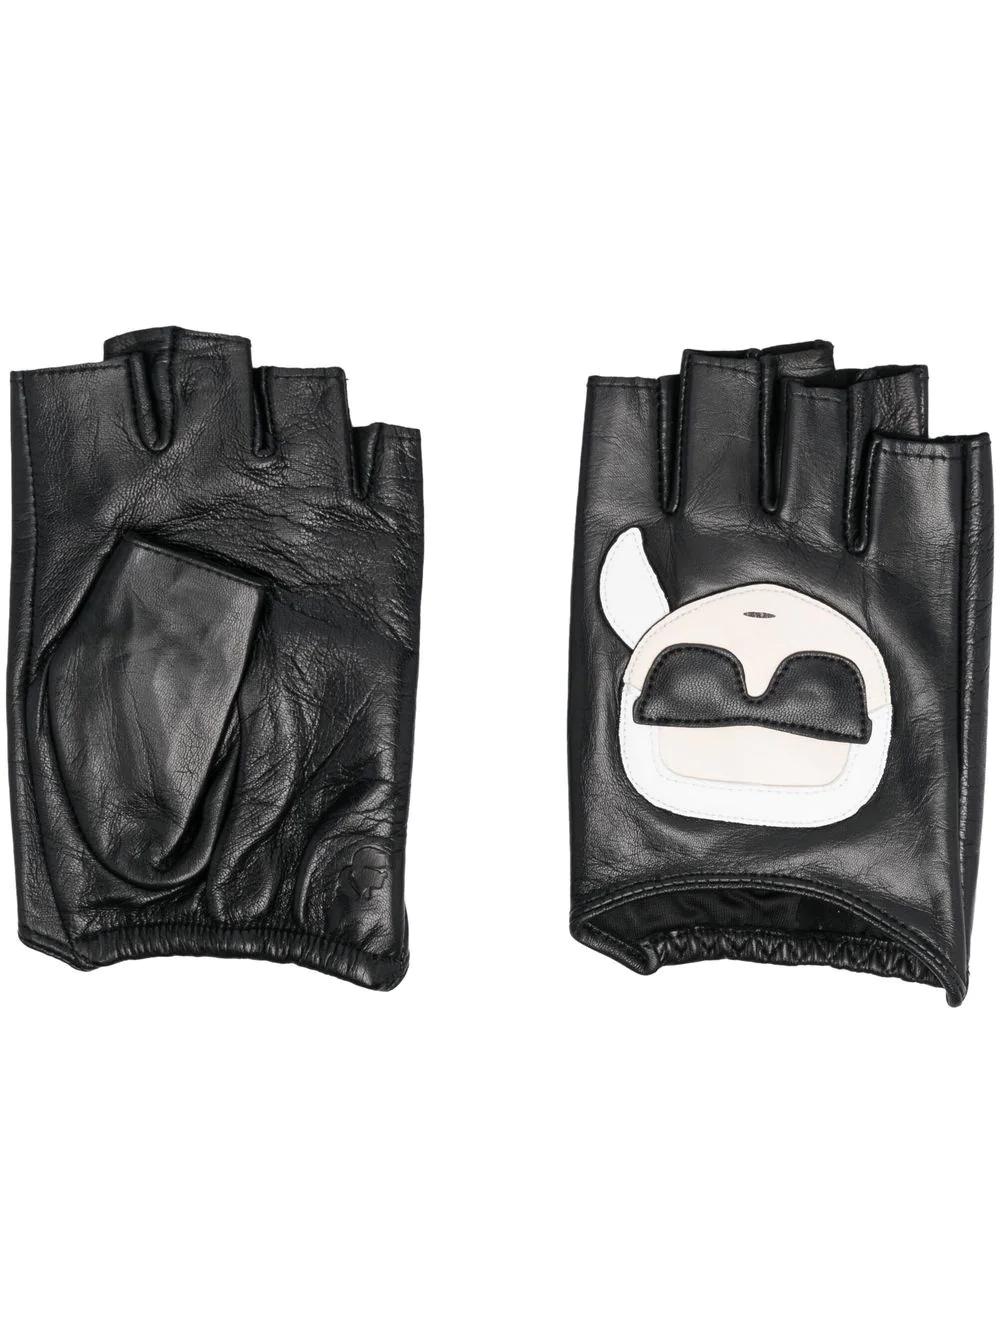 Guantes Karl Lagerfeld negros ikonik gloves